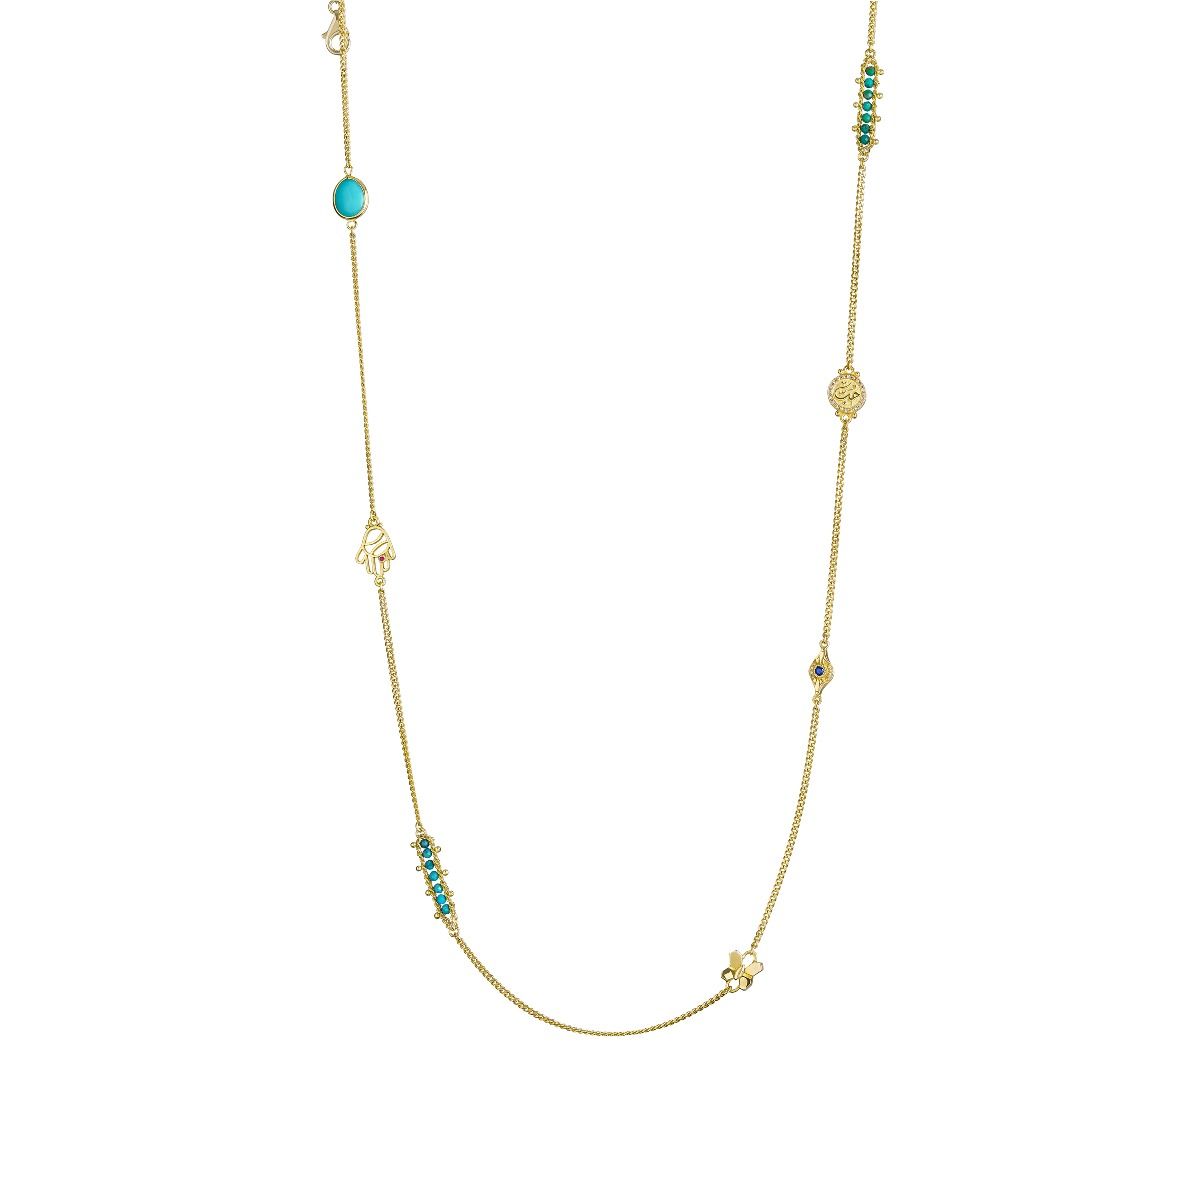 Multi-Way Necklace by Azza Fahmy - Designer Necklaces